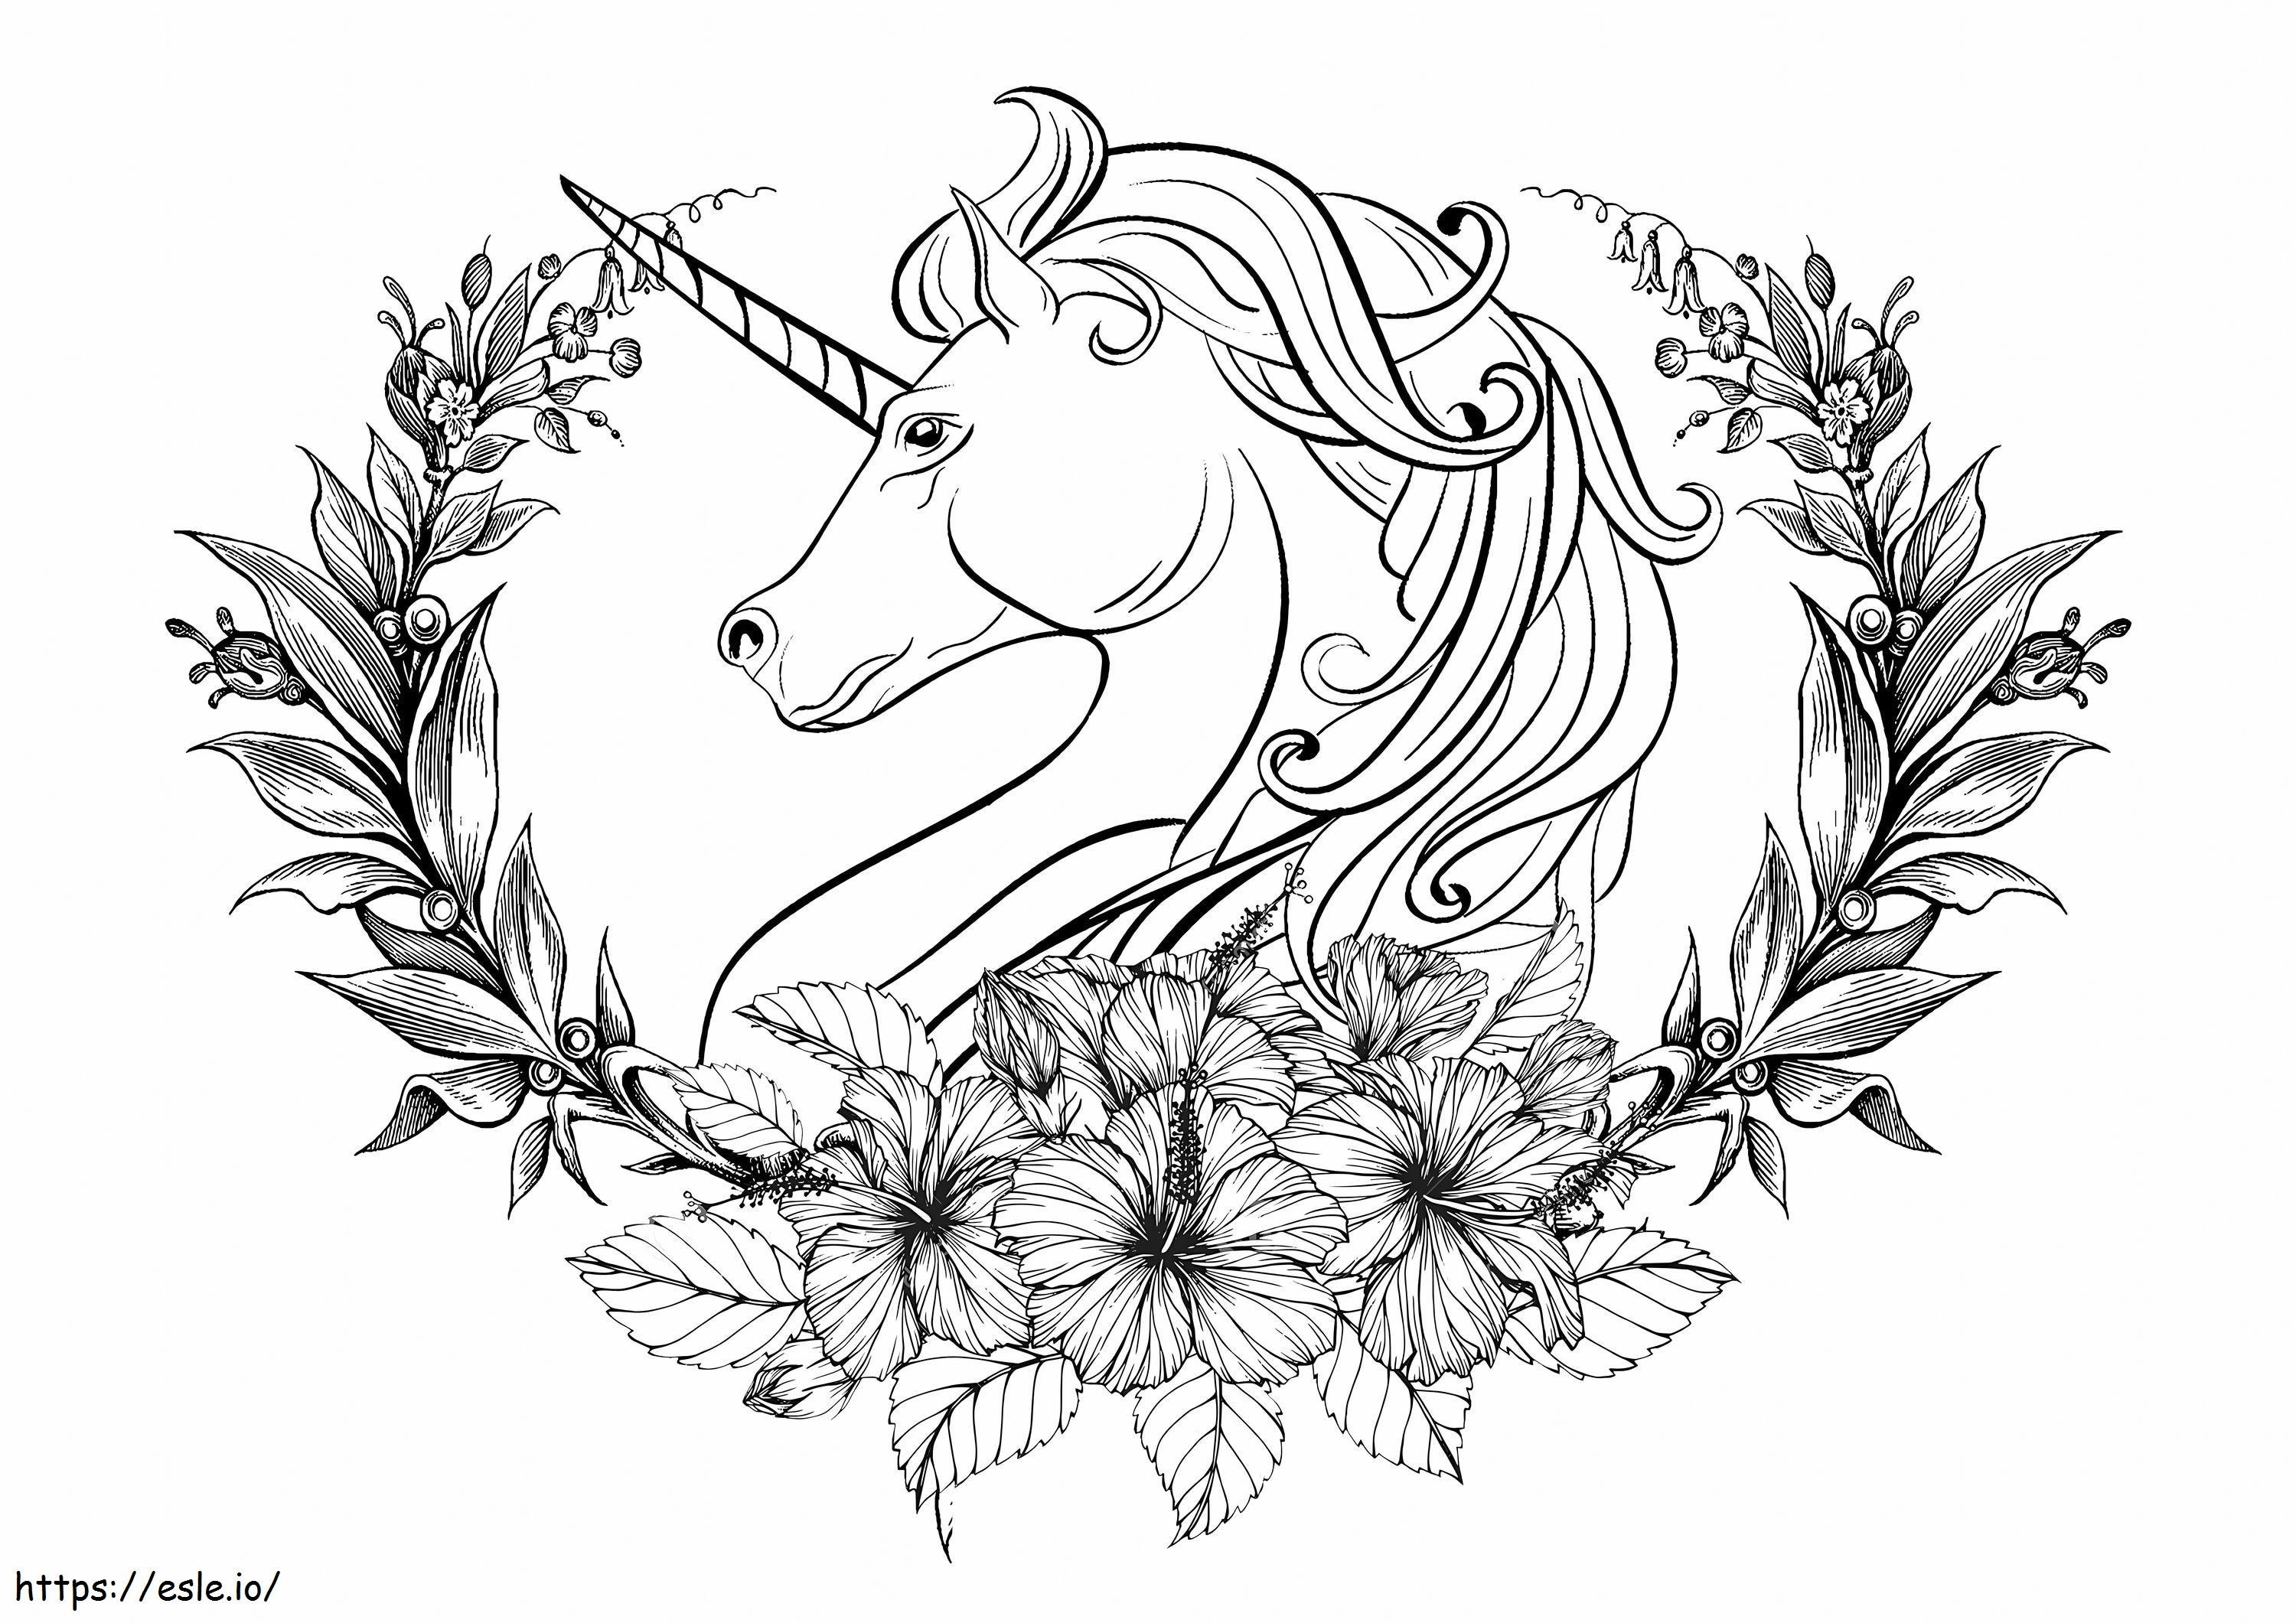 Corona De Unicornio Y Laurel Escamado para colorear